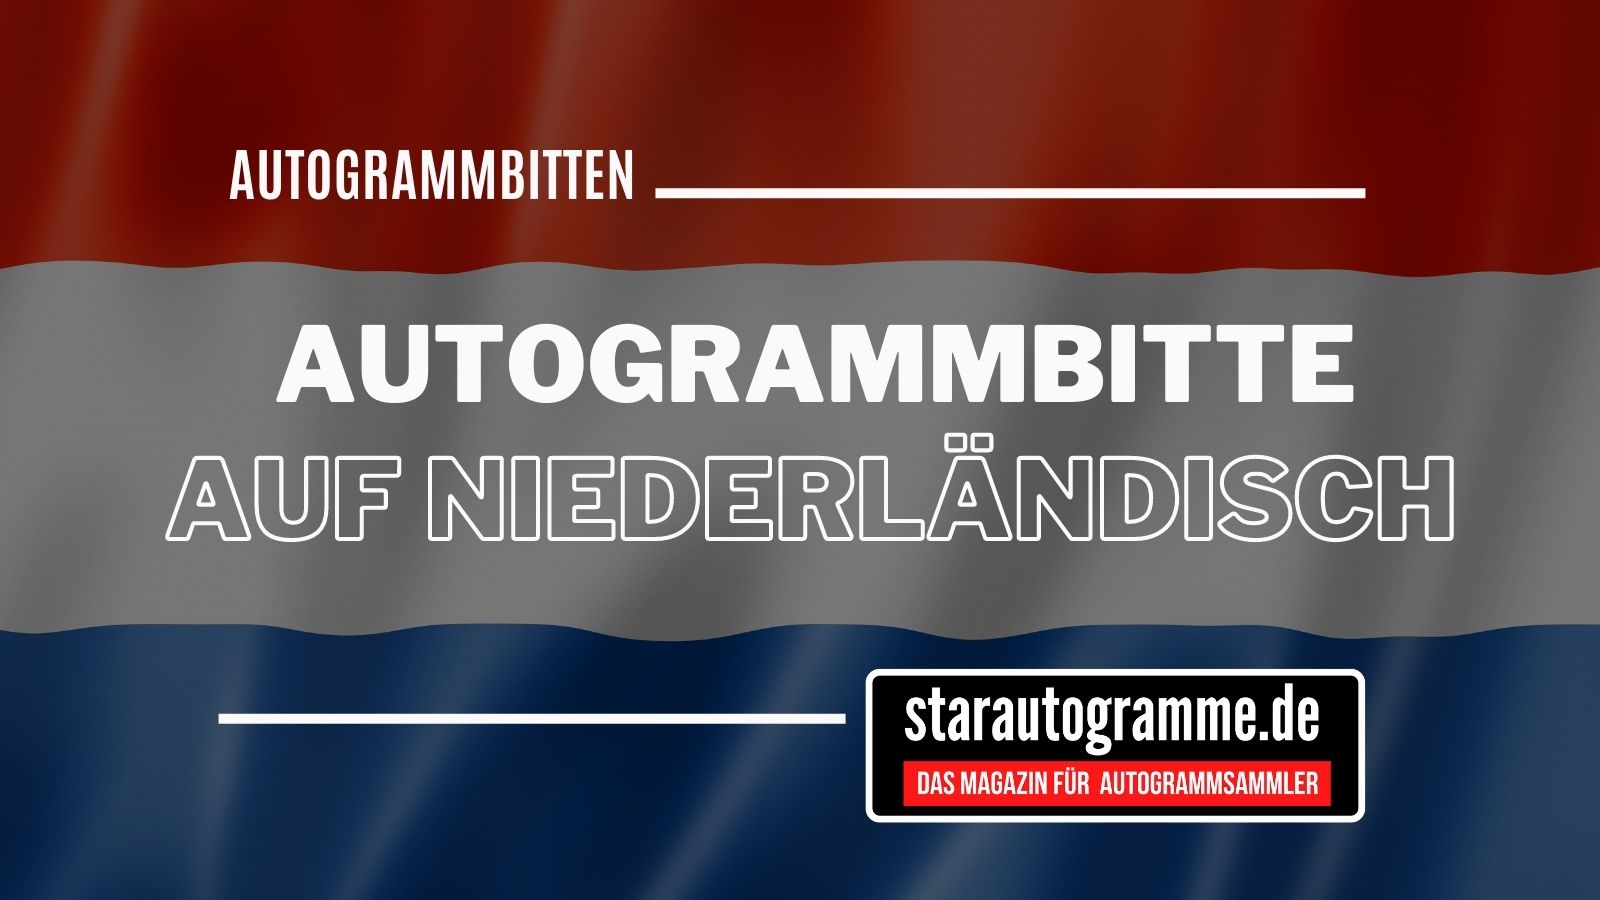 Standardautogrammbitte Deutsch-Niederländisch